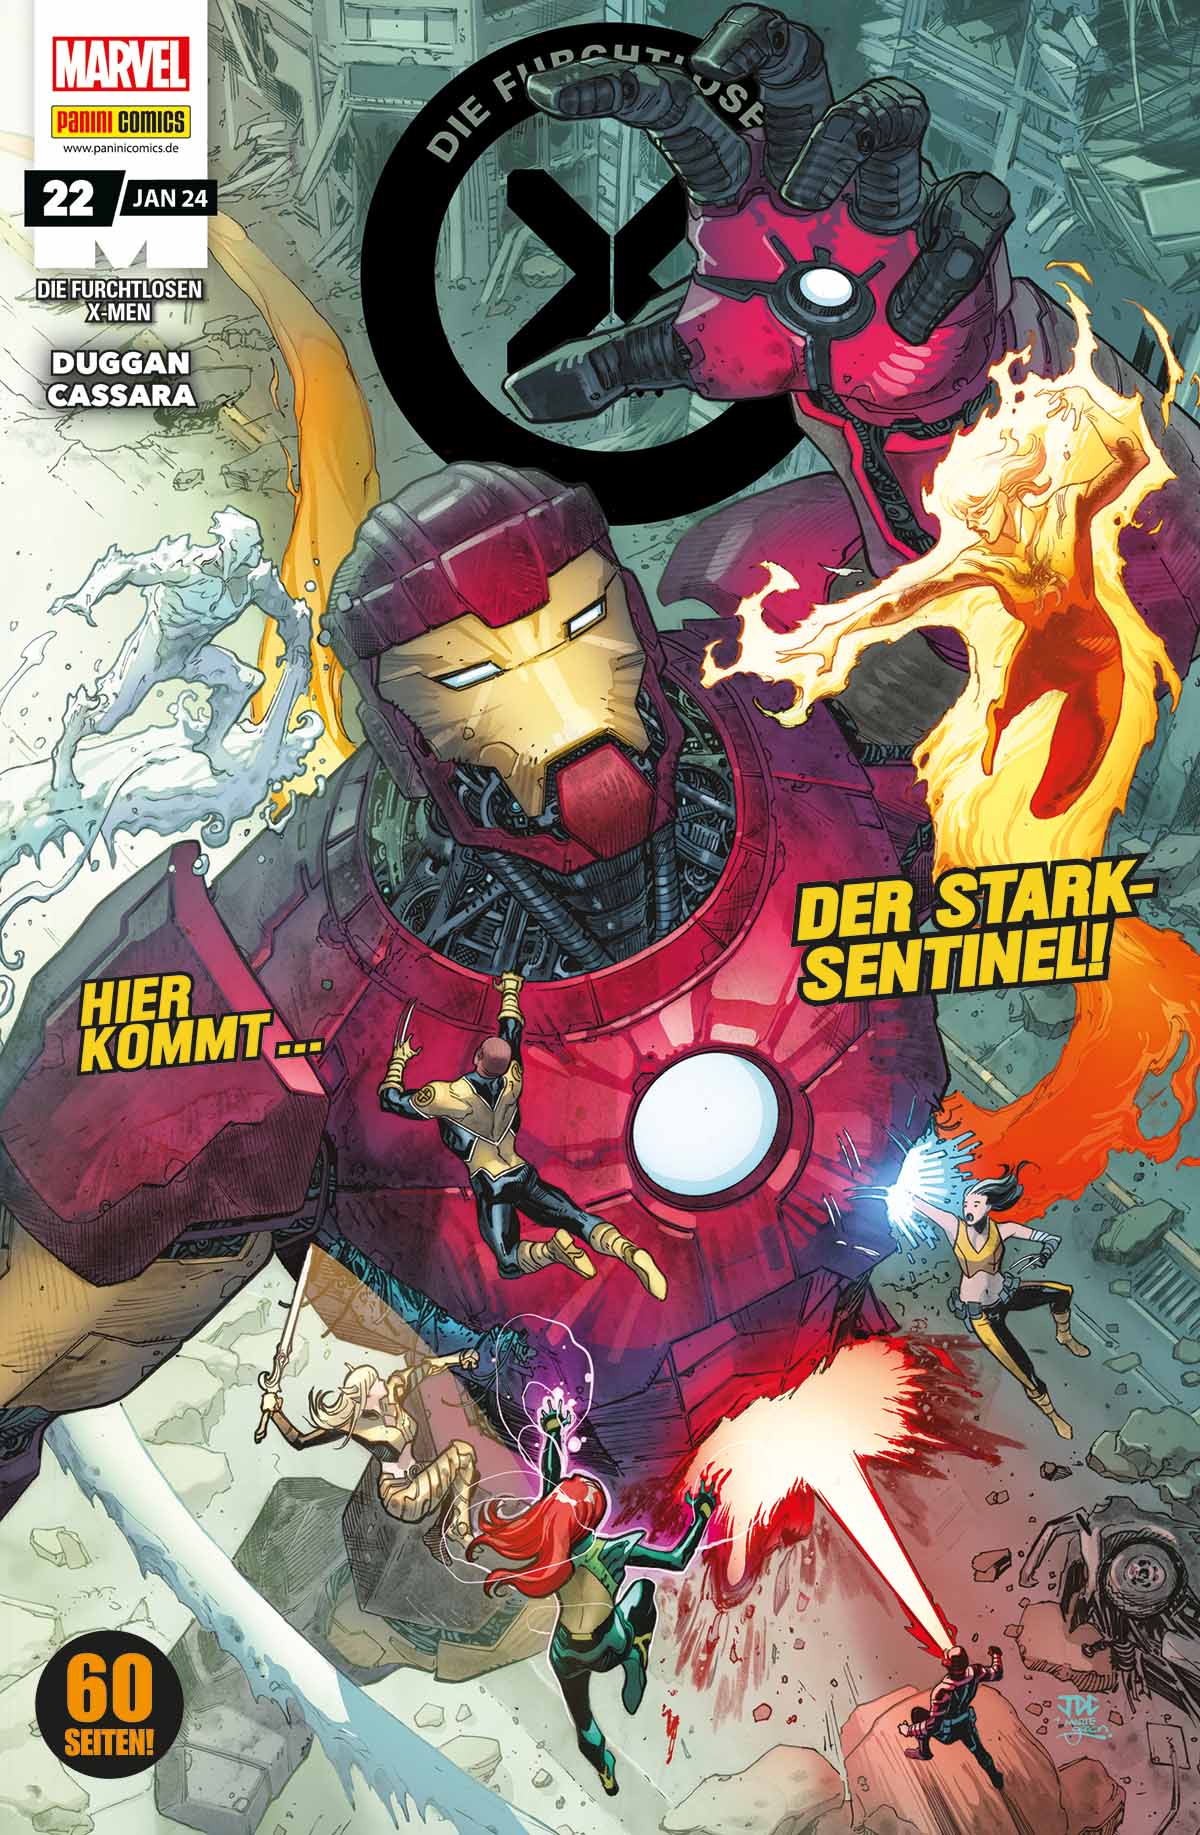 Die furchtlosen X-Men Hier kommt... der Stark-Sentinel!